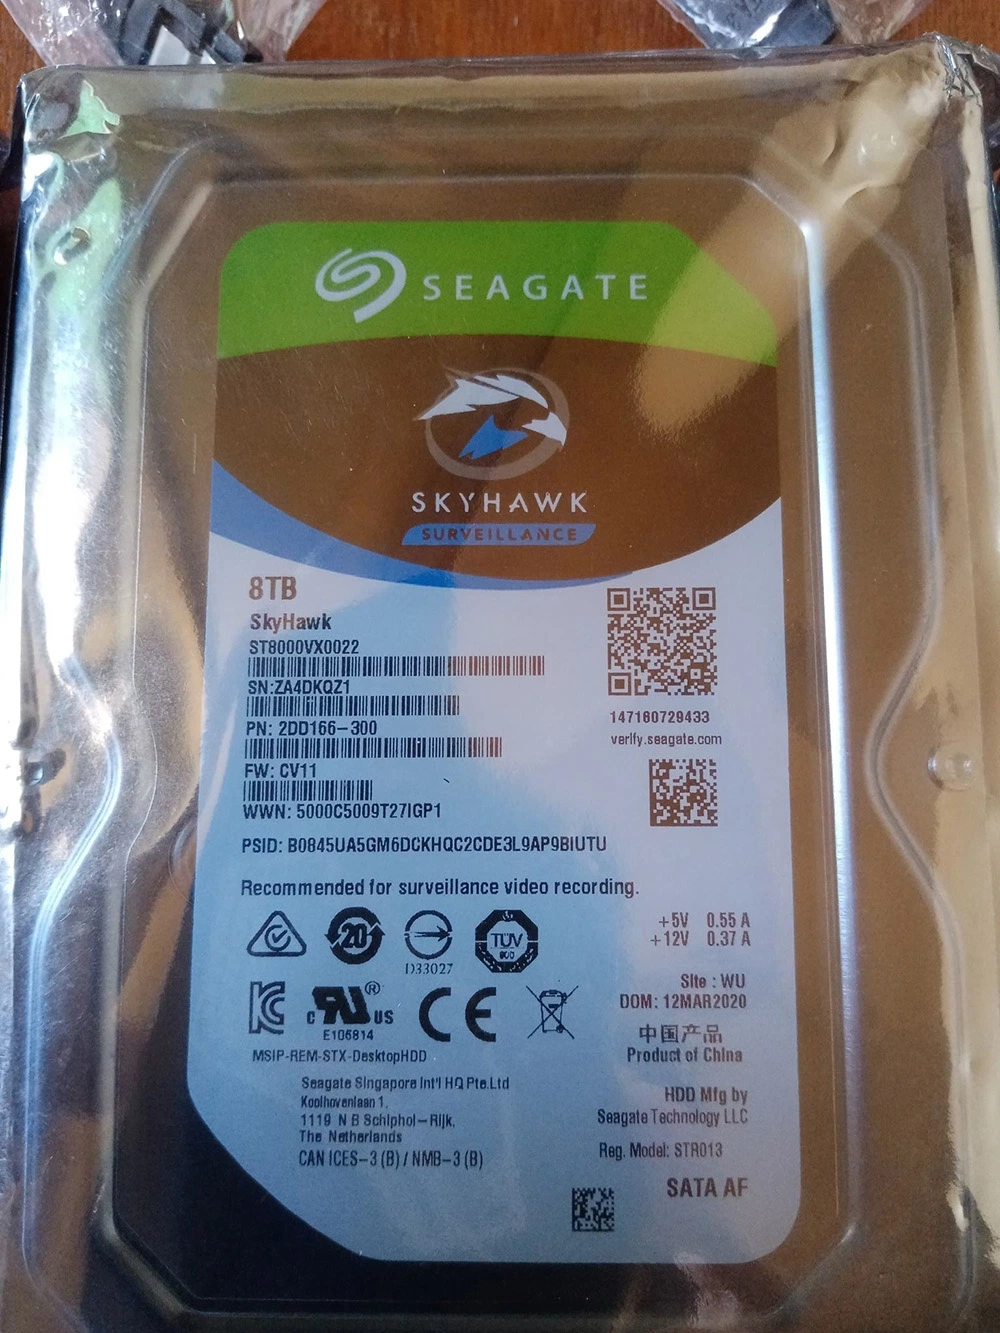 Seagate Skyhawk Surveillance 8tb Hard Diskst8000vx0022 8tb SSD/HDD SATA 6.0GB/S 256MB Hard Drive SSD/HDD